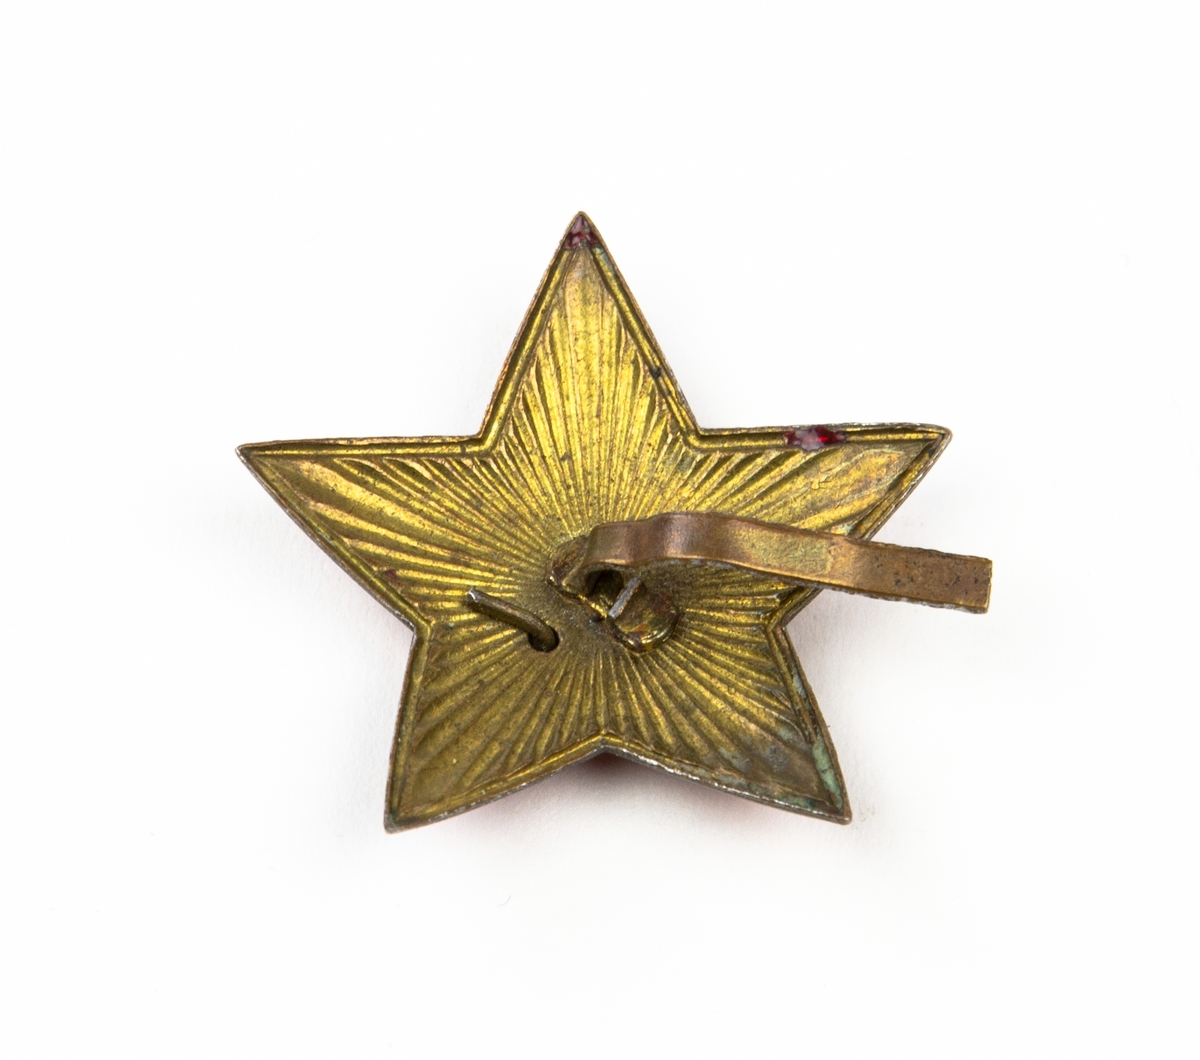 Mössmärke i form av en 5-uddig stjärna. På märket hammaren och skäran. Från Ryssland.